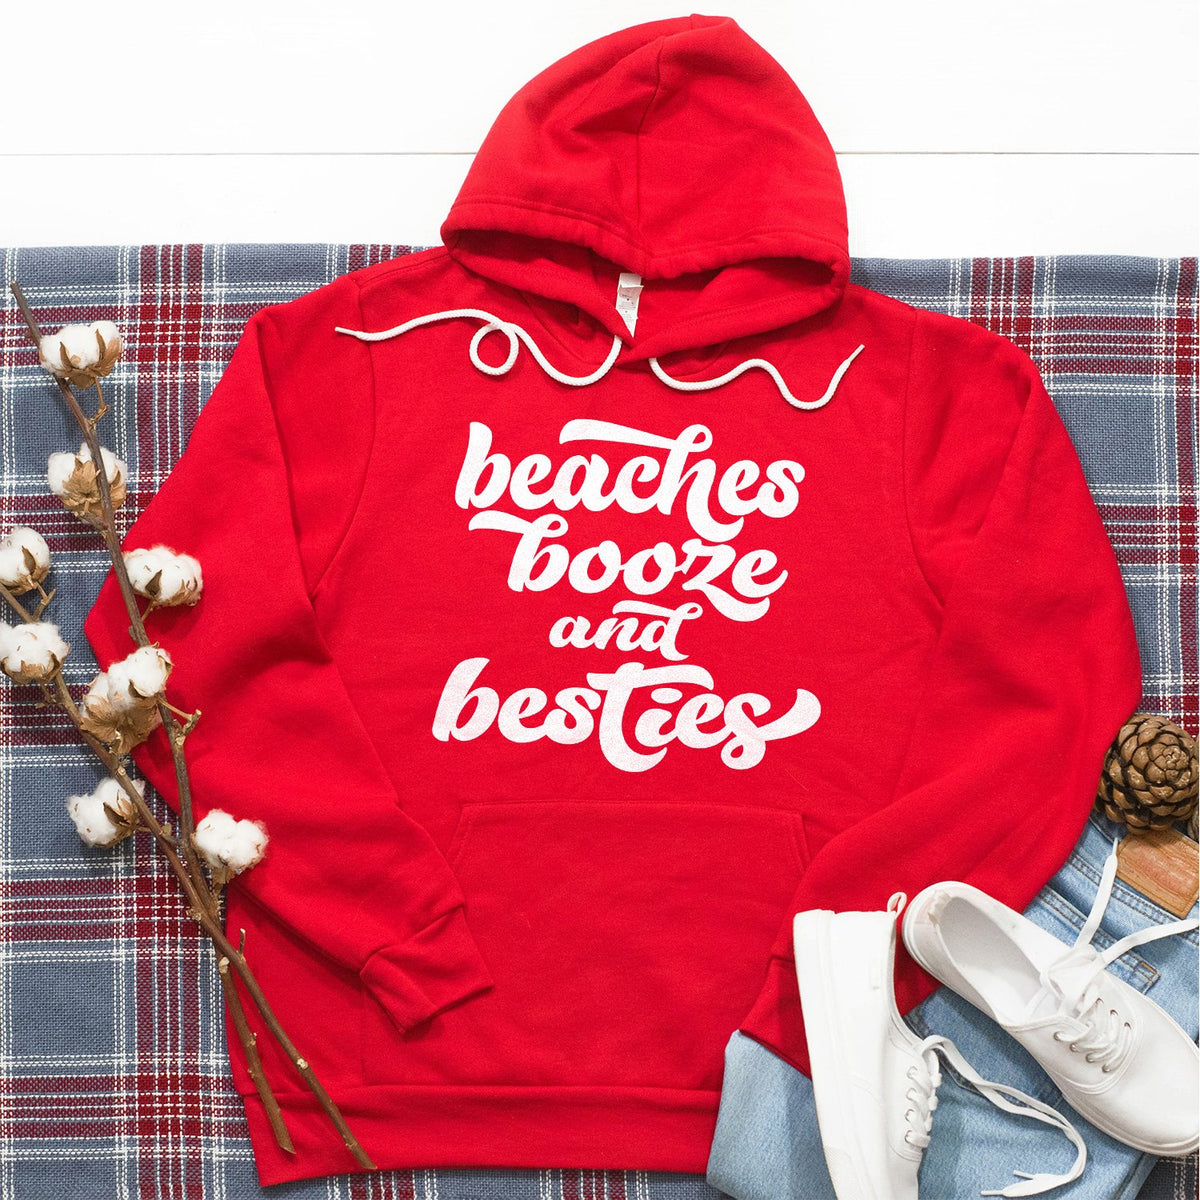 Beaches Booze and Besties - Hoodie Sweatshirt